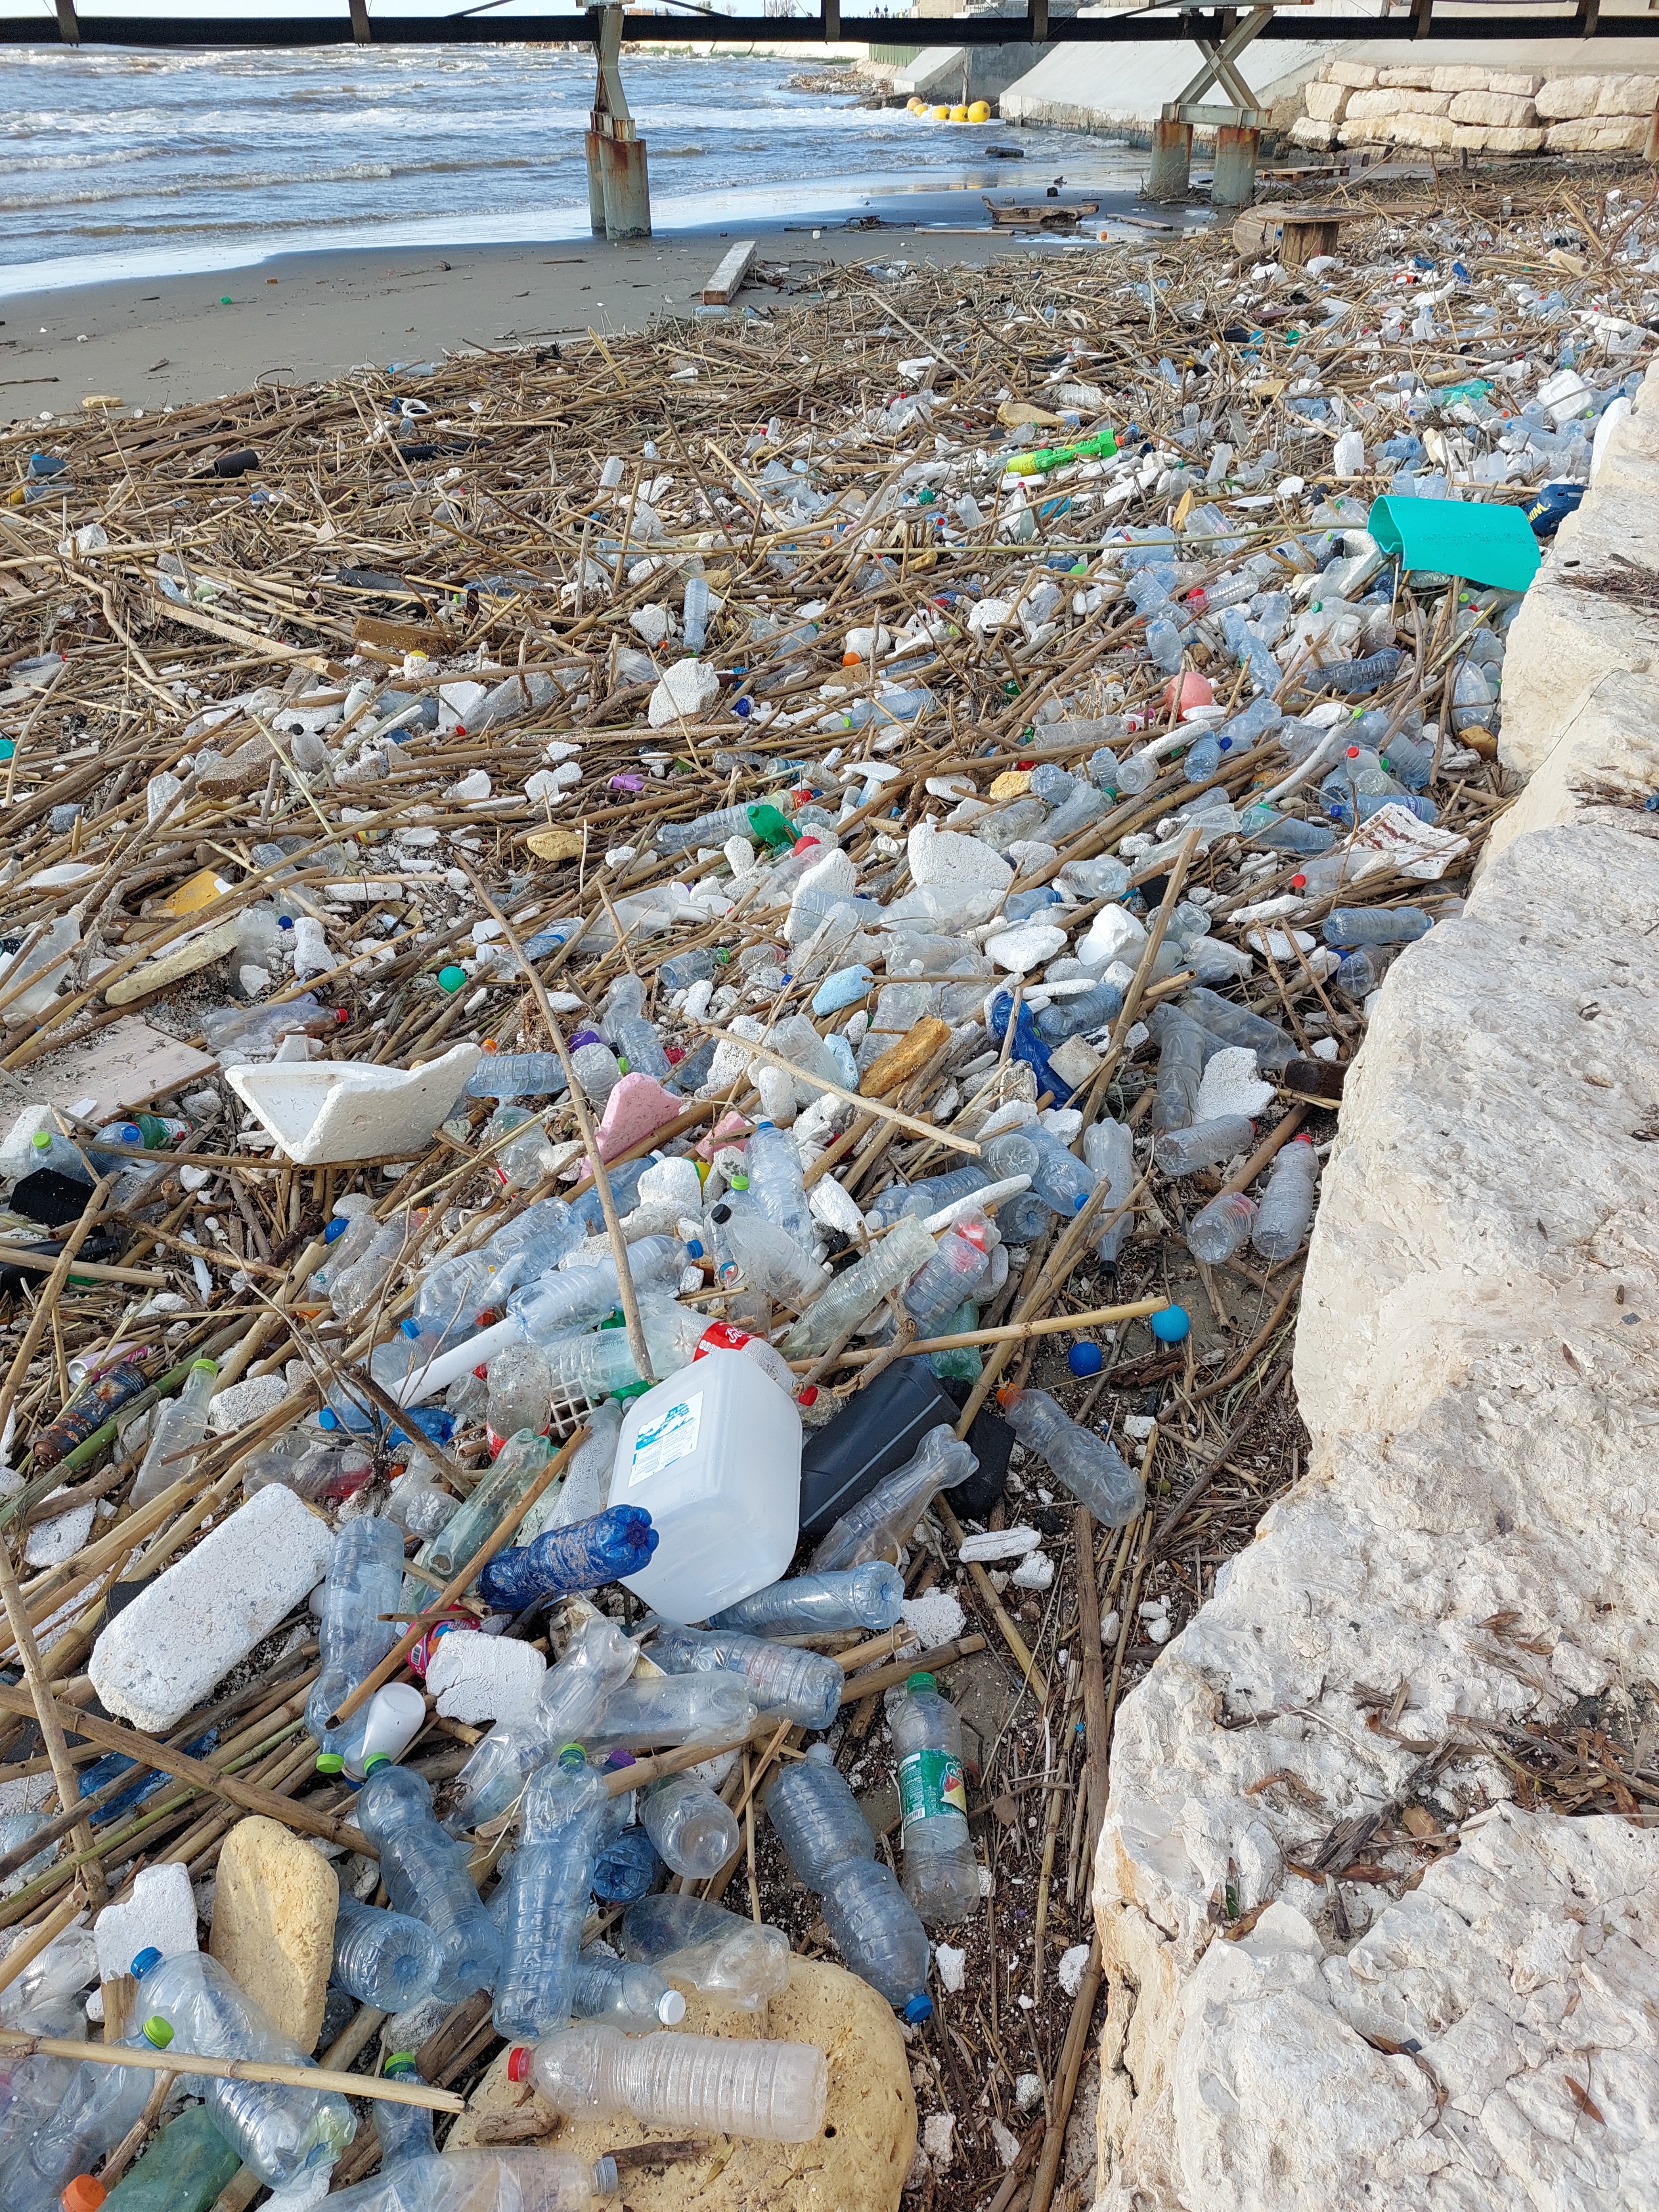 פסולת פלסטיק בירקון לפני כשבועיים וחצי. צילום אוולין אנקה 3